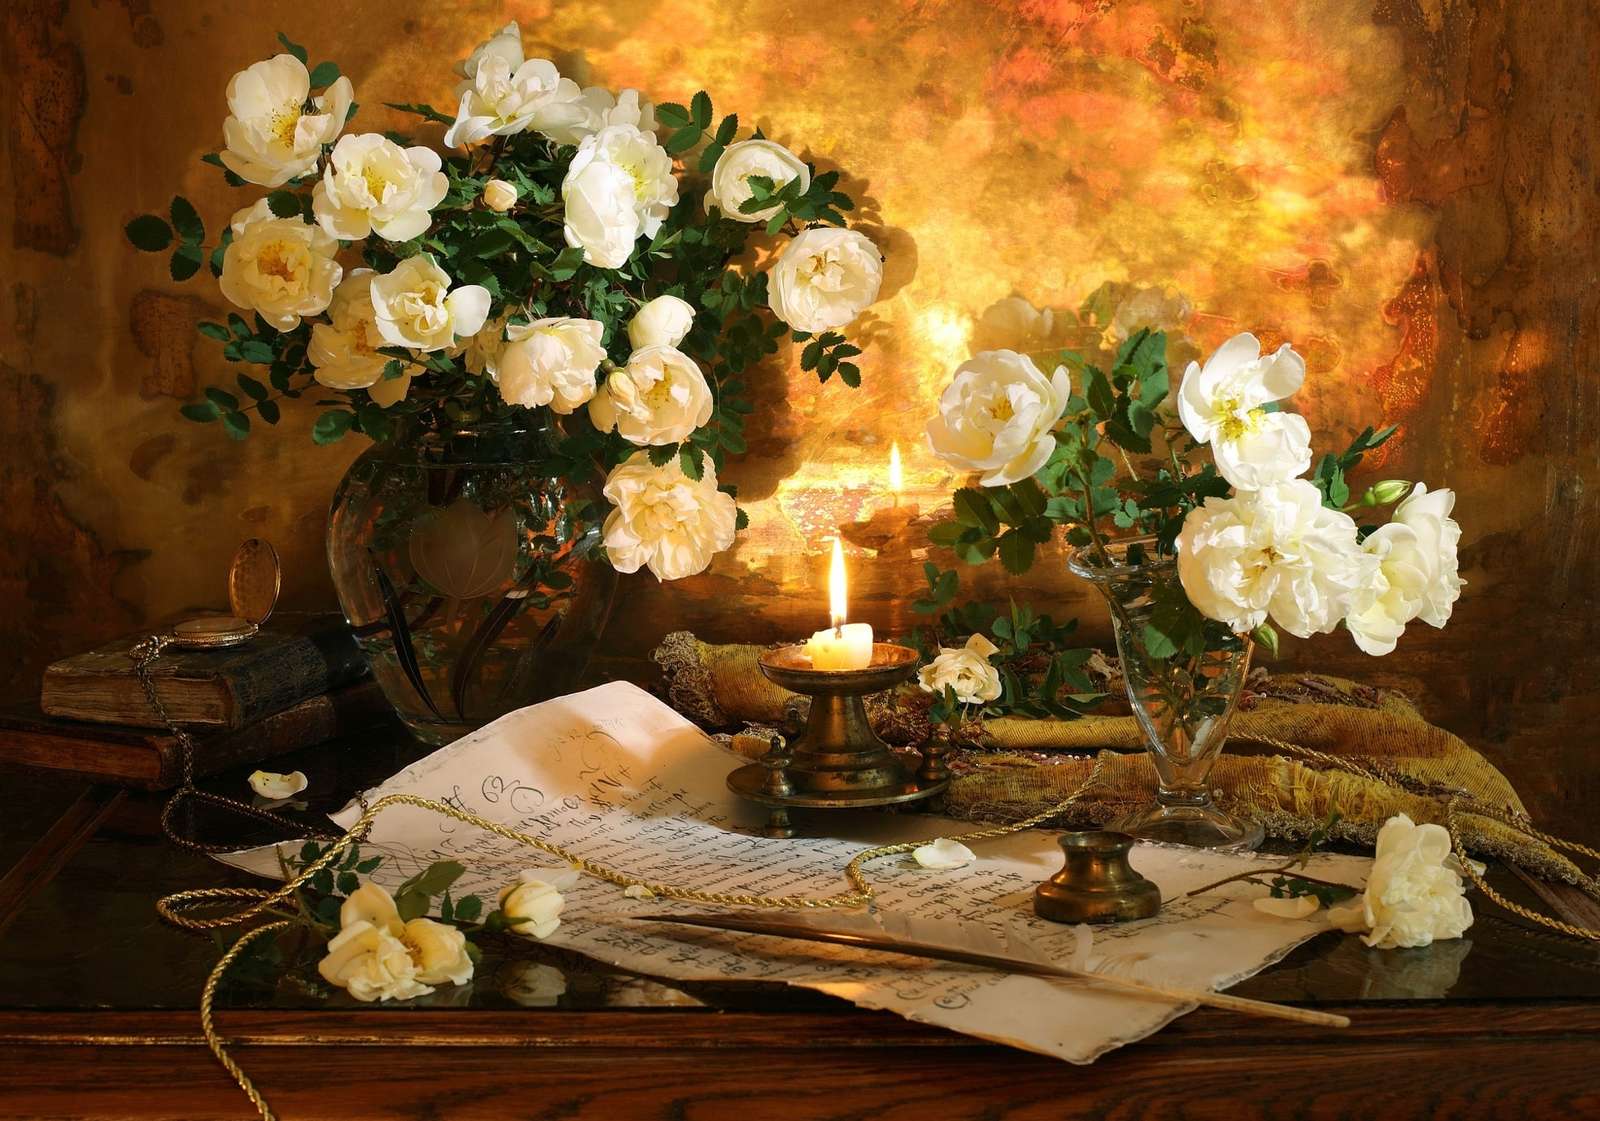 Świecznik na rękopisie obok wazonu z kwiatami puzzle online